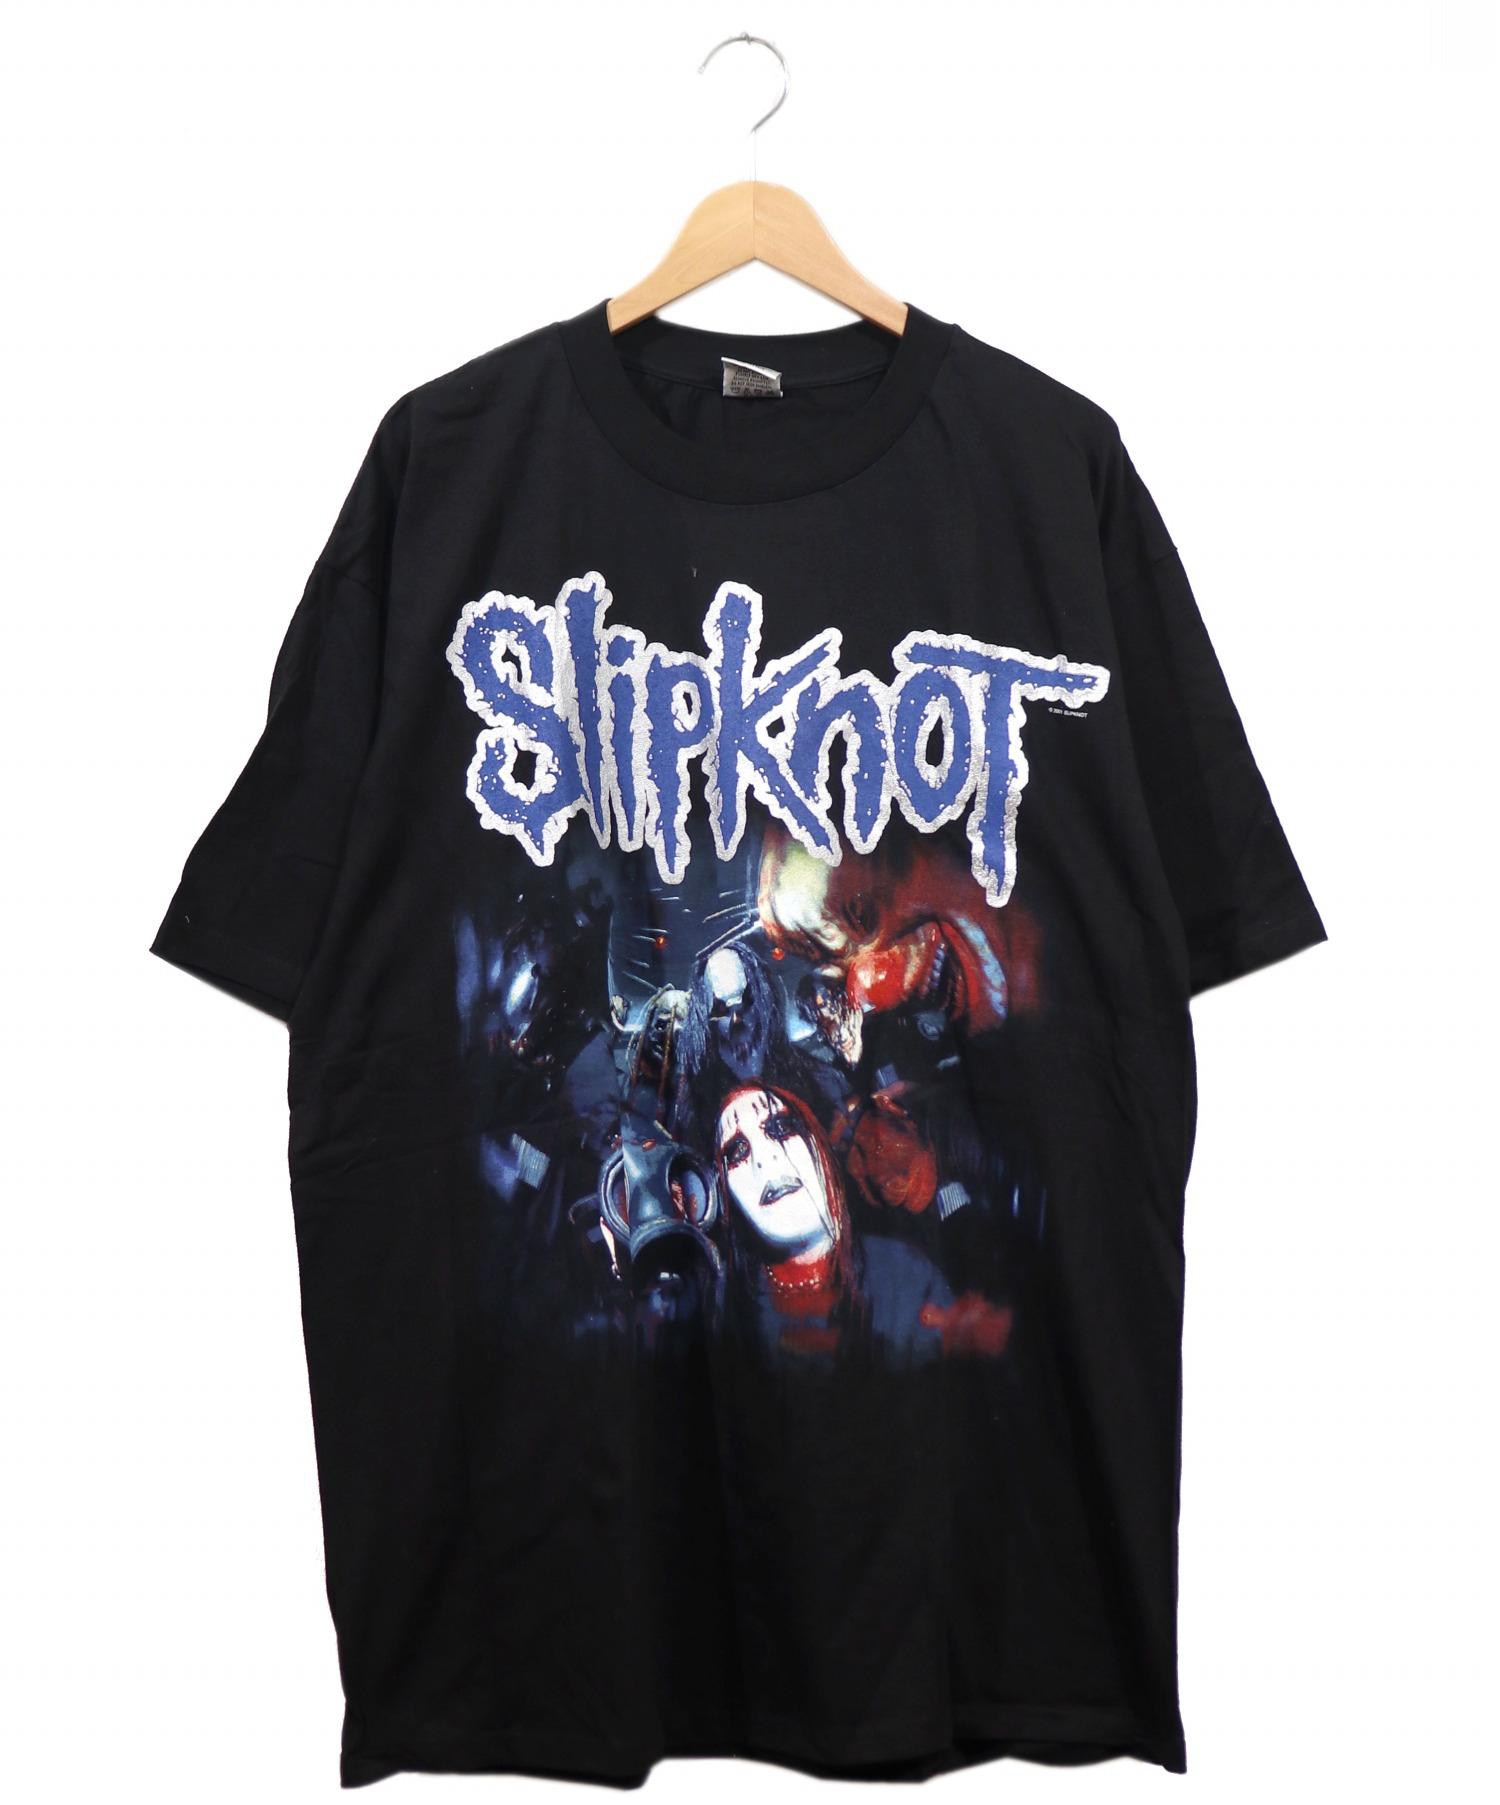 SLIPKNOT (スリップノット) バンドTシャツ サイズ:XL スリップノット・デットストック・01年